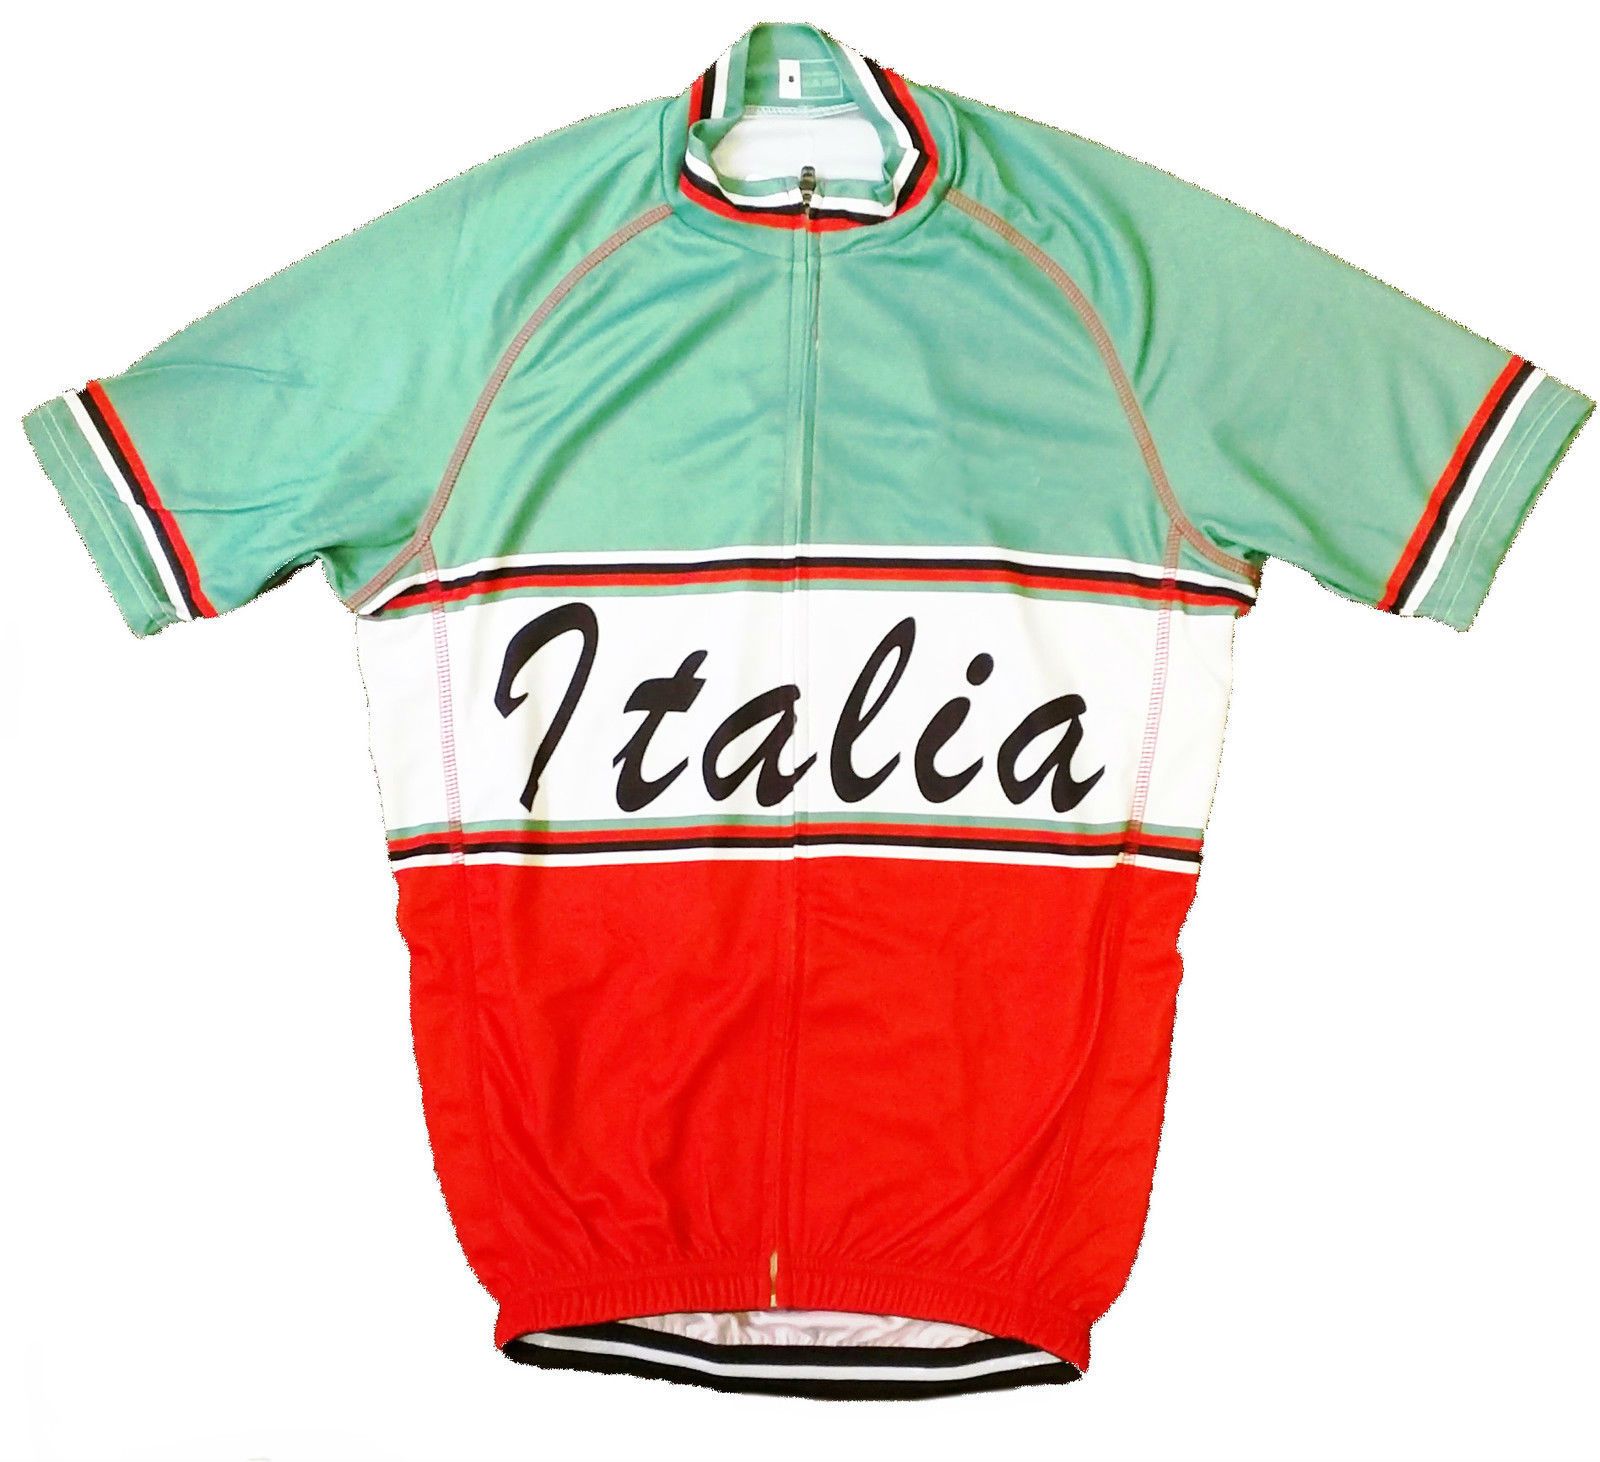 vintage cycling jerseys